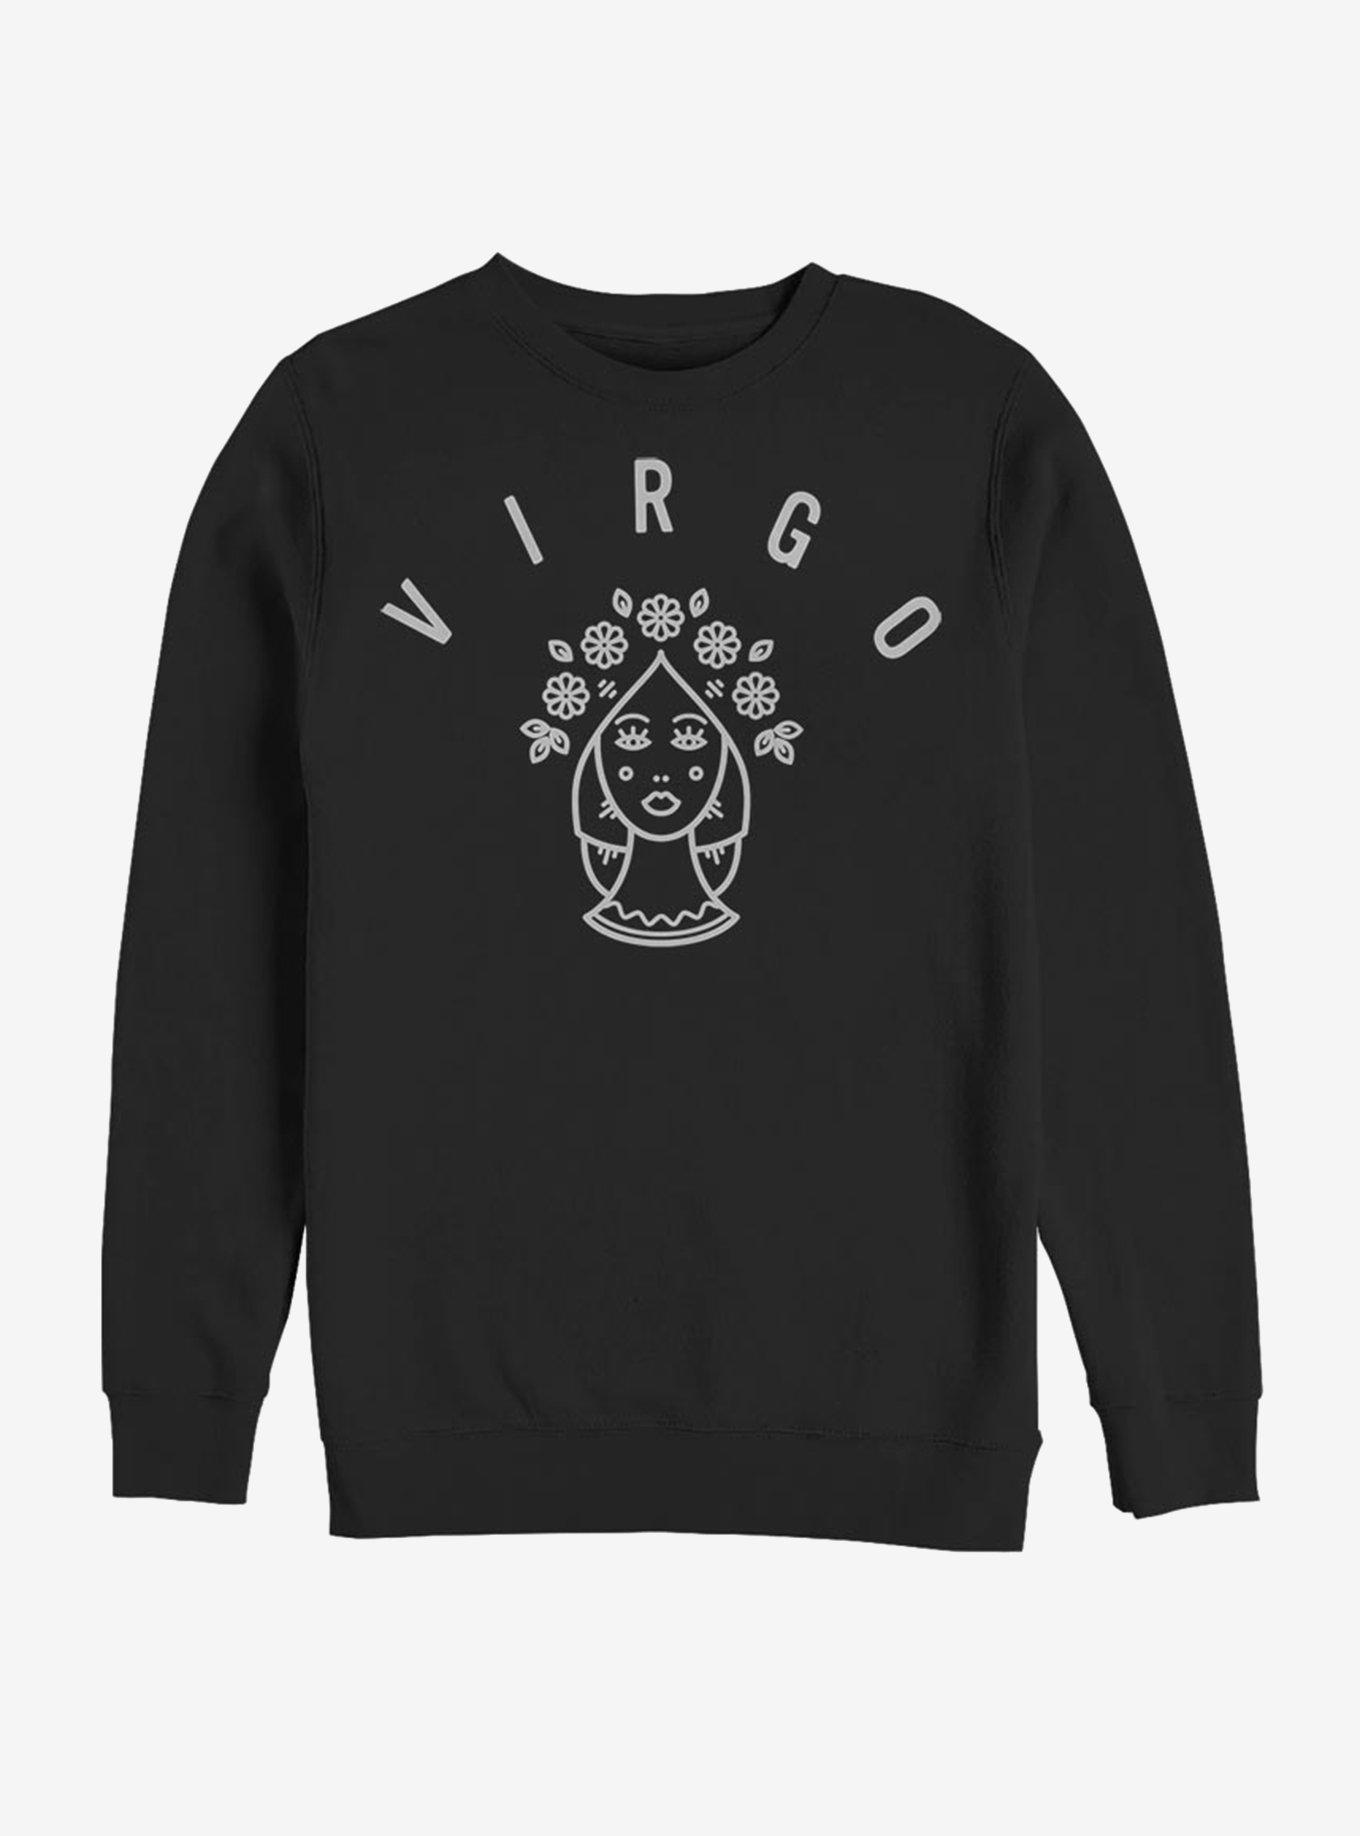 Virgo Astrology Sign Sweatshirt, BLACK, hi-res